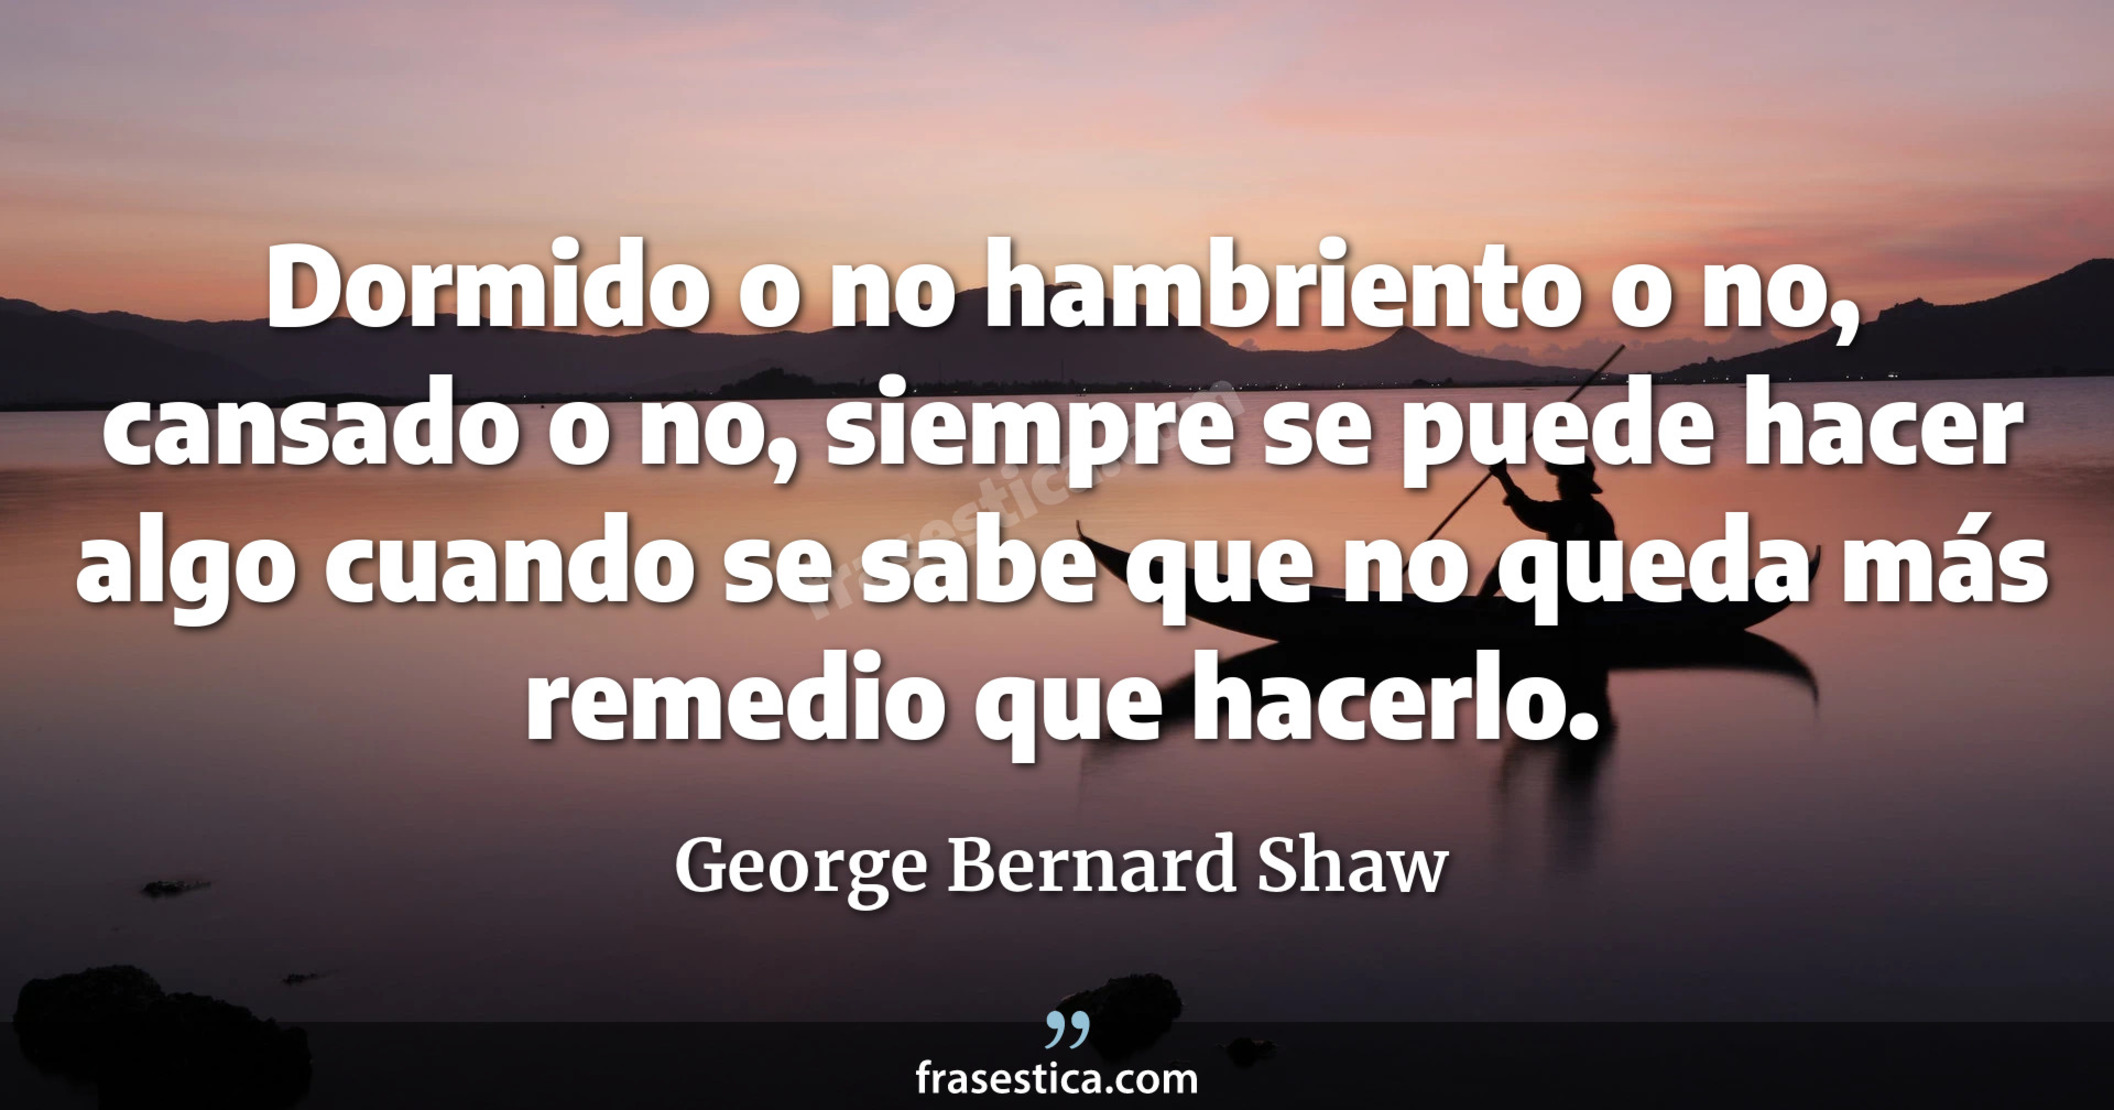 Dormido o no hambriento o no, cansado o no, siempre se puede hacer algo cuando se sabe que no queda más remedio que hacerlo. - George Bernard Shaw